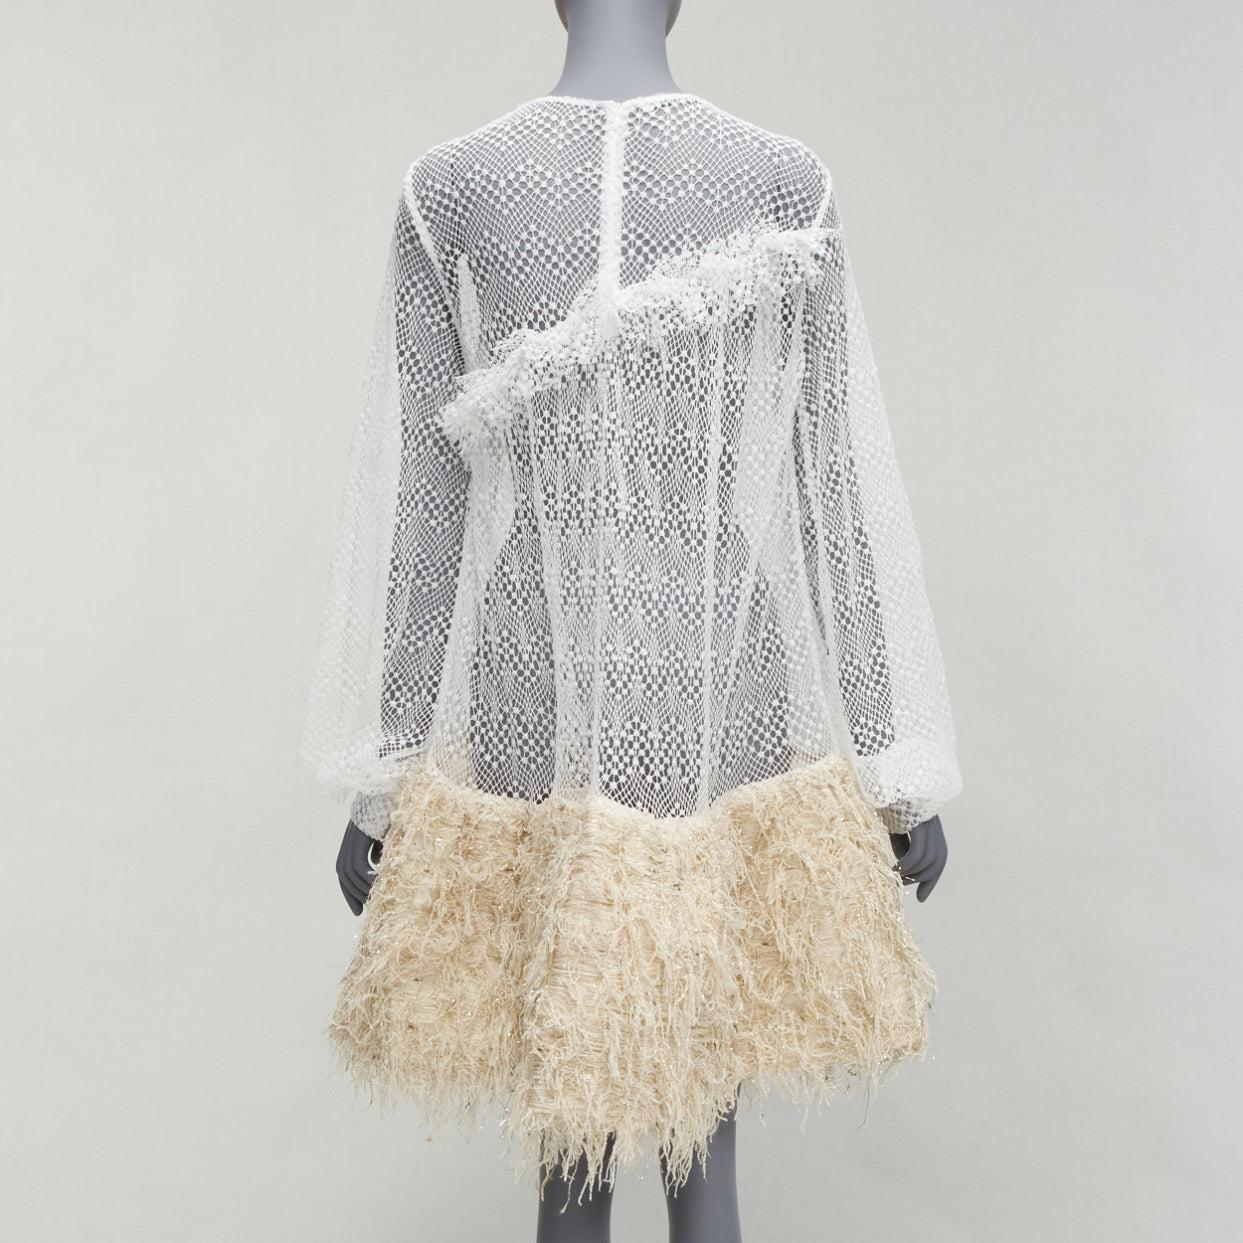 ANAIS JOURDEN 2018 Runway white net beige fringe skirt dress FR38 M For Sale 1